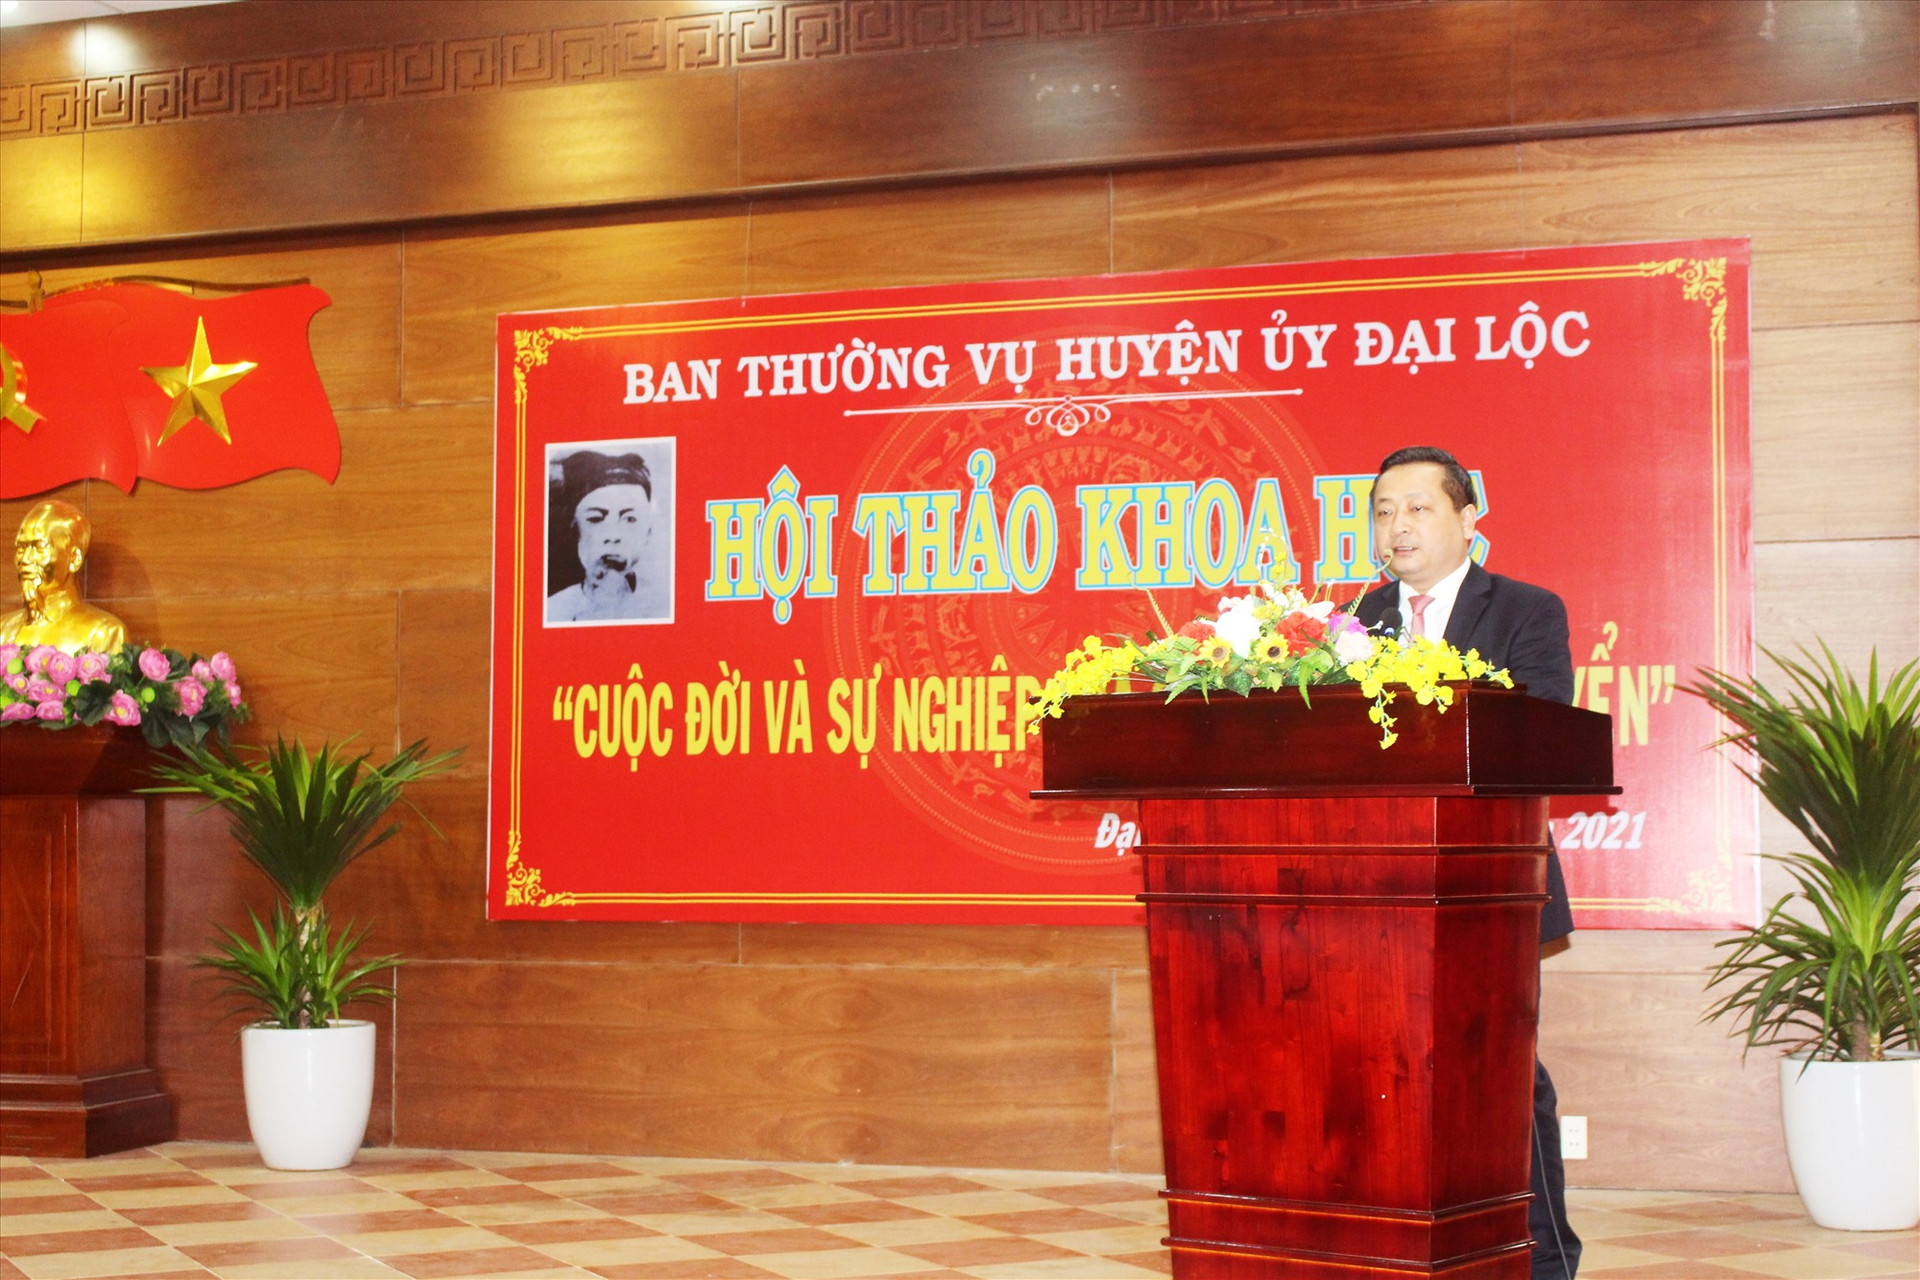 Ông Nguyễn Hảo - Bí thư Huyện ủy Đại Lộc phát biểu tại hội thảo. Ảnh: HOÀNG LIÊN